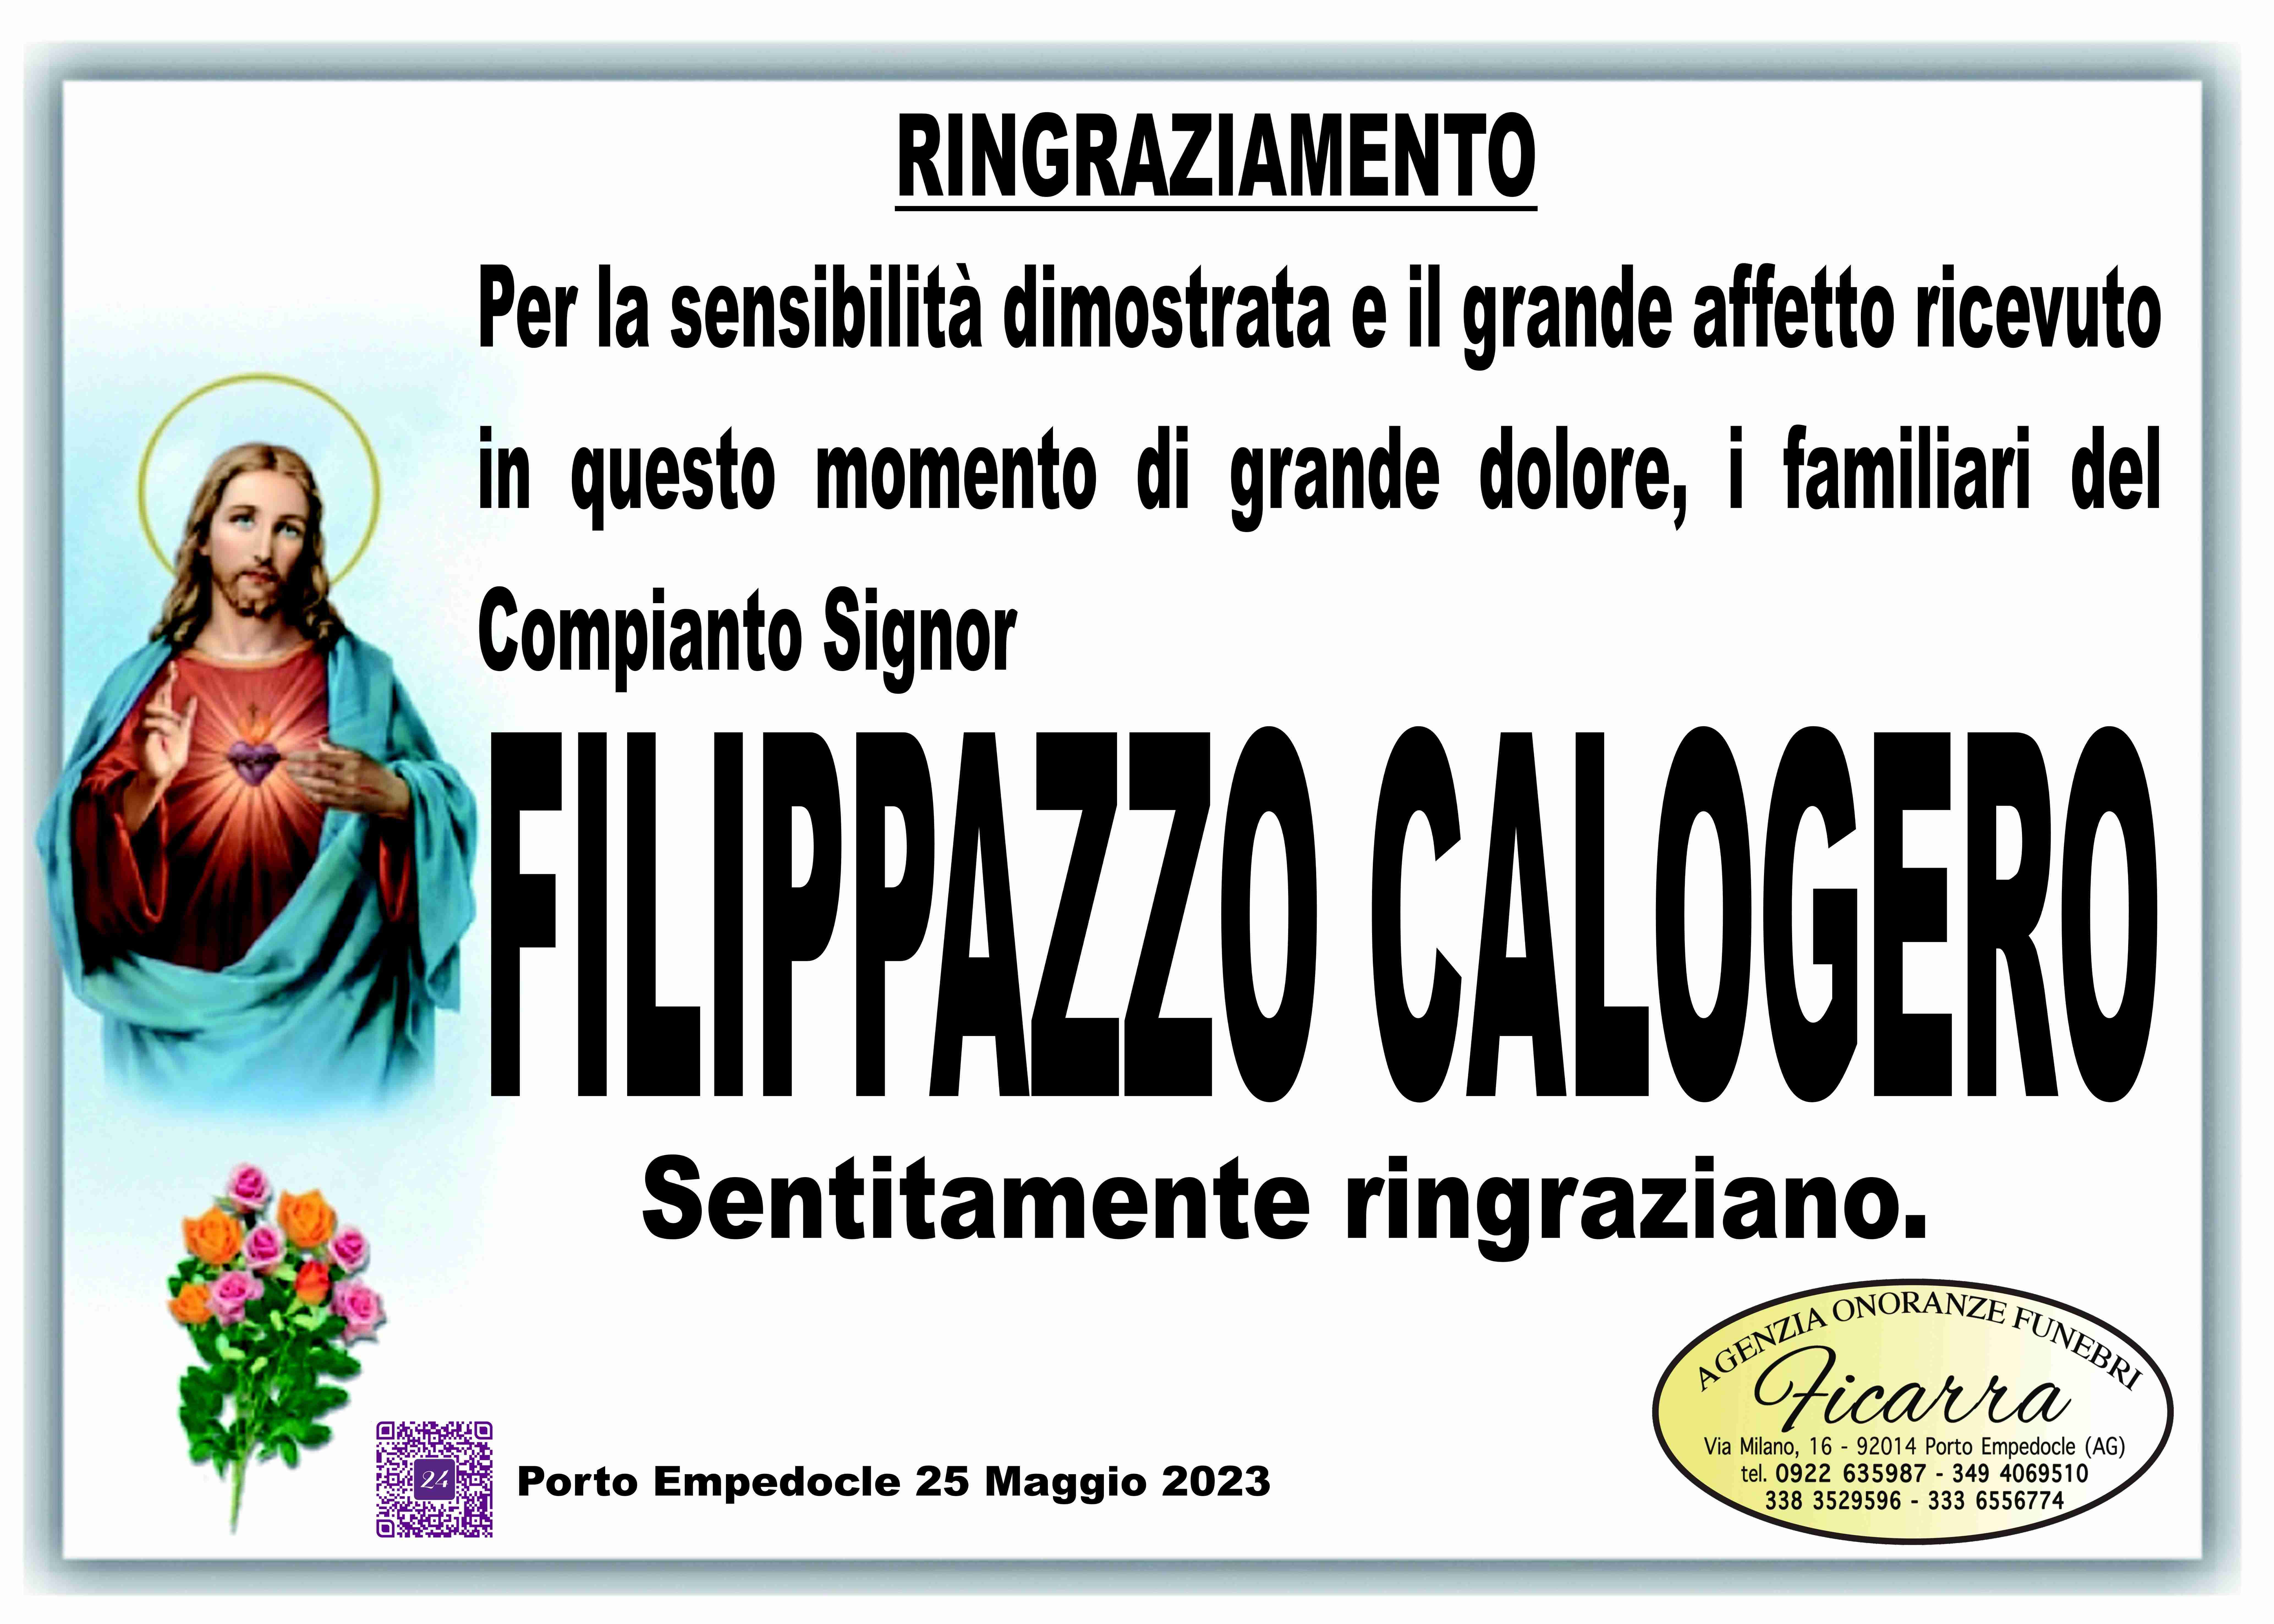 Calogero Filippazzo